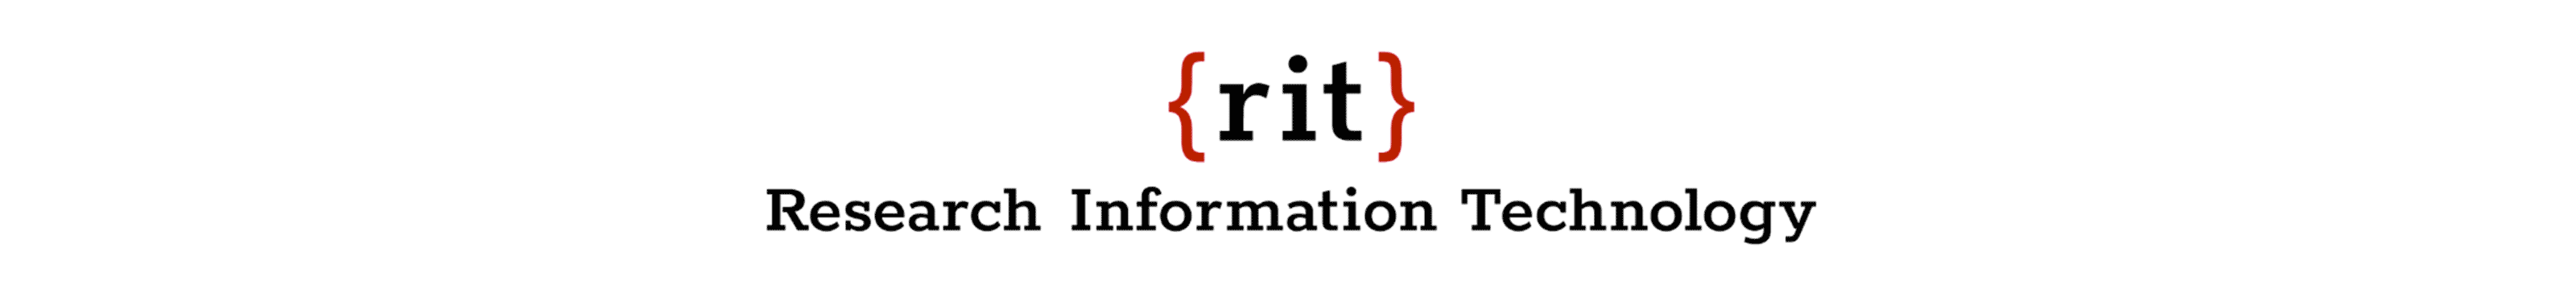 RIT-logo